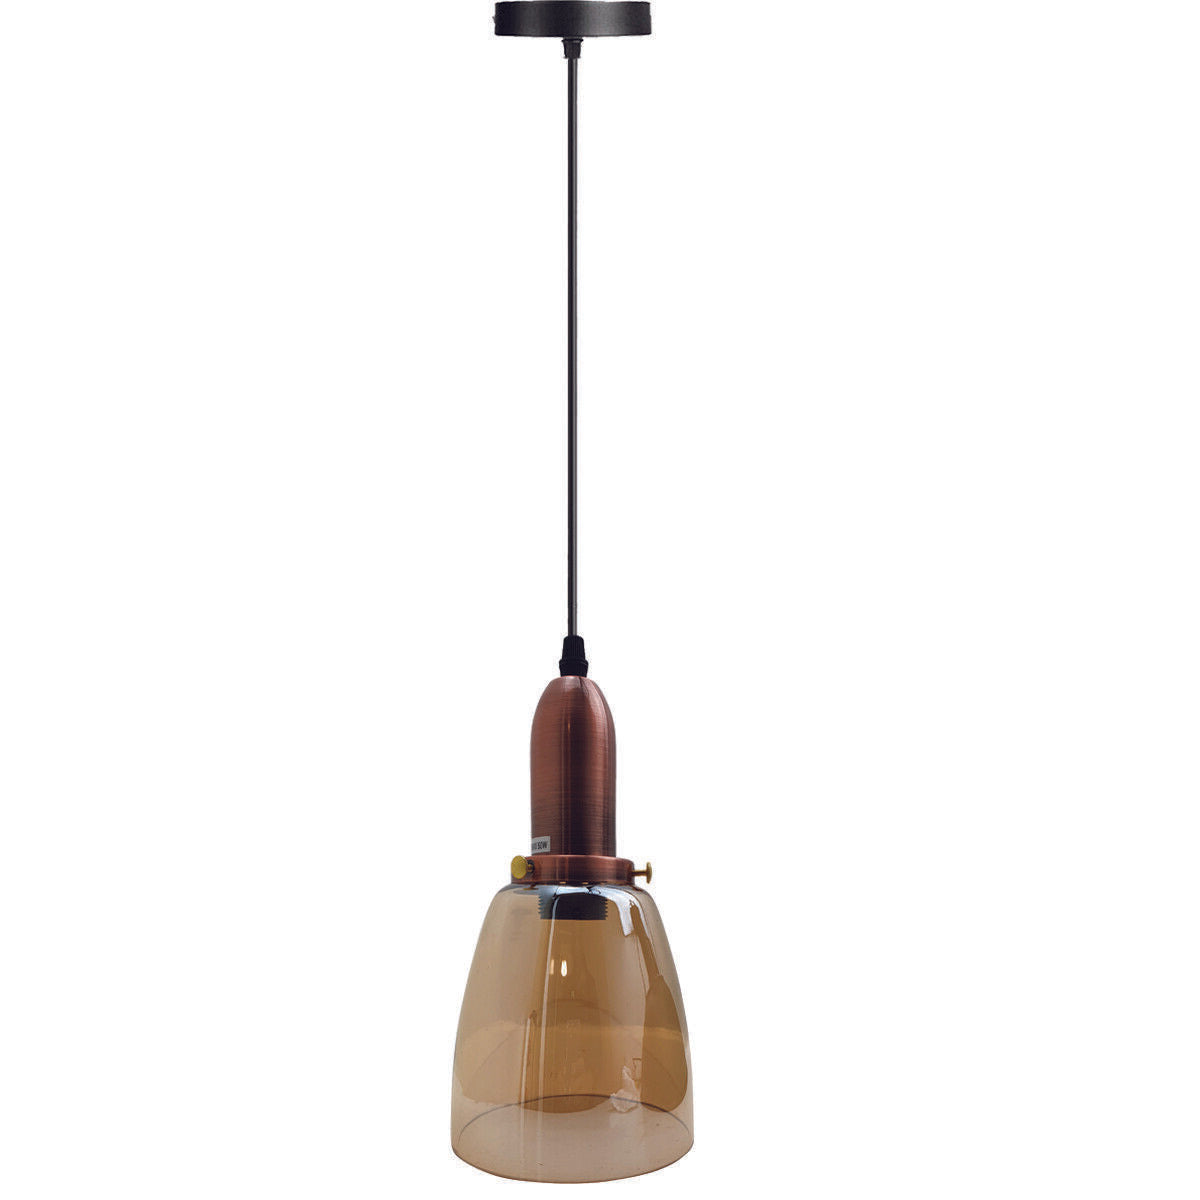 Retro Ceiling Light Glass Vintage Industrial E27 Base Holder Pendant Lamp UK~2090 - LEDSone UK Ltd